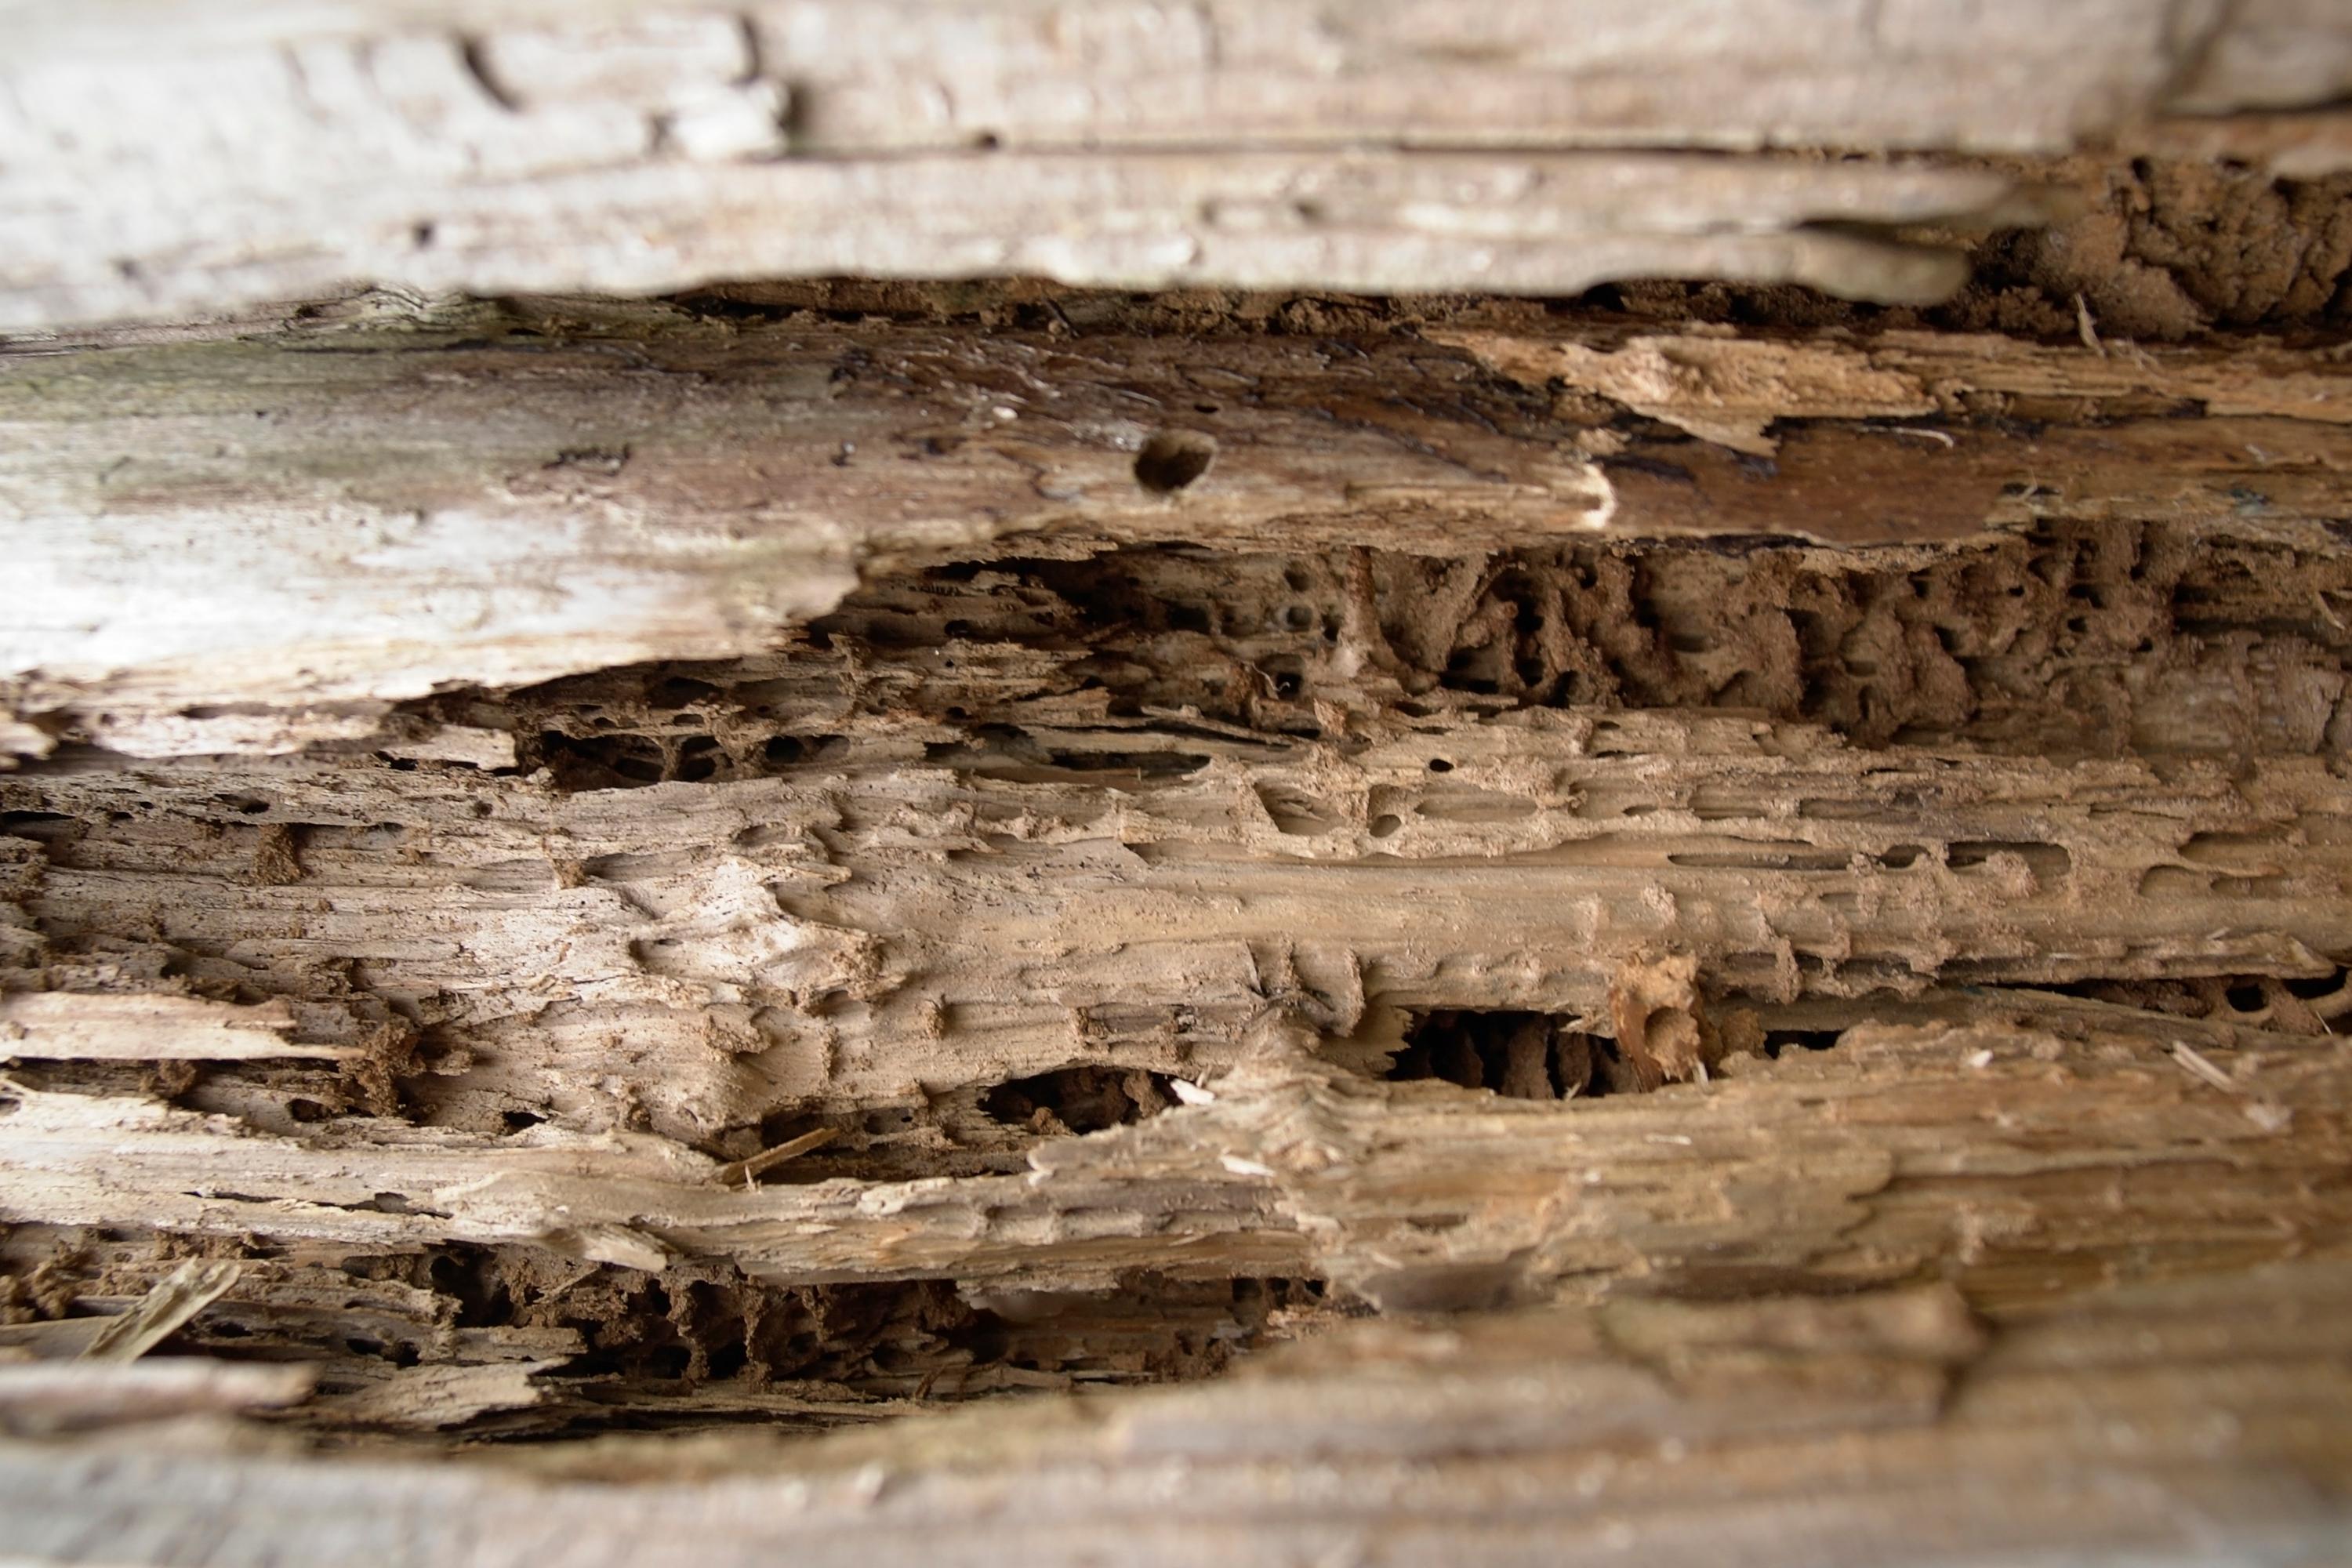  Holz zerstörende Insekten können grossen Schaden anrichten.